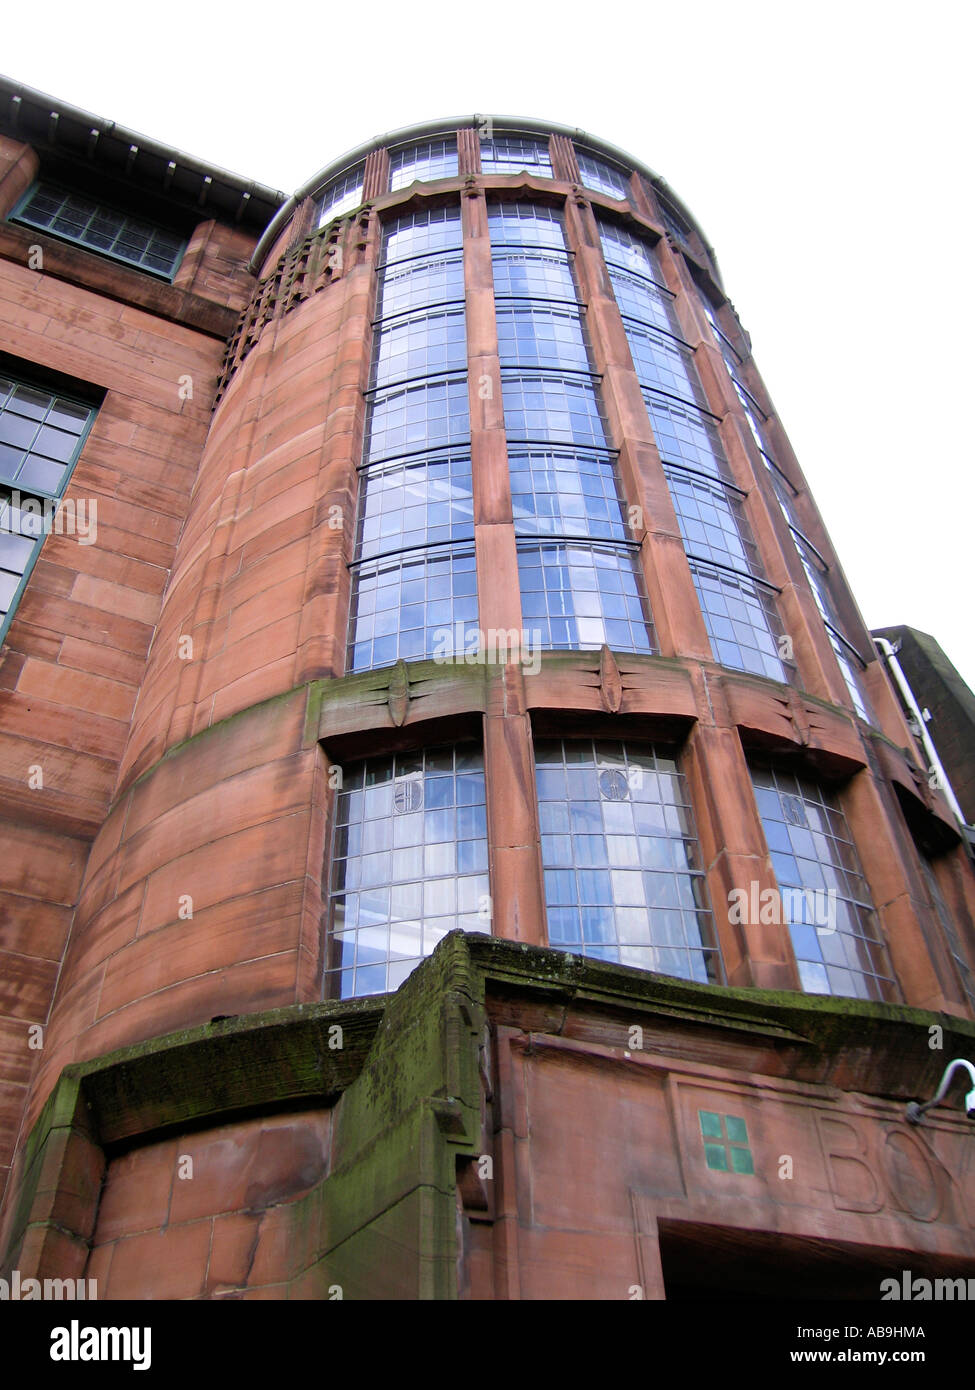 Detail Schottland Straße Schule Glasgow Stockfoto